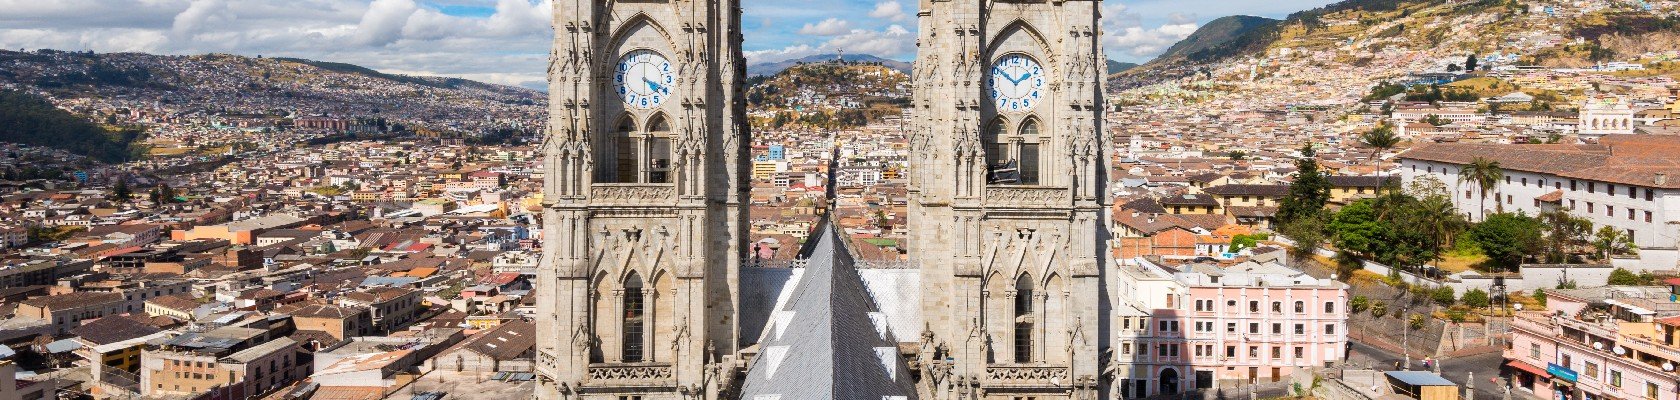 UNESCO Werelderfgoed in Quito